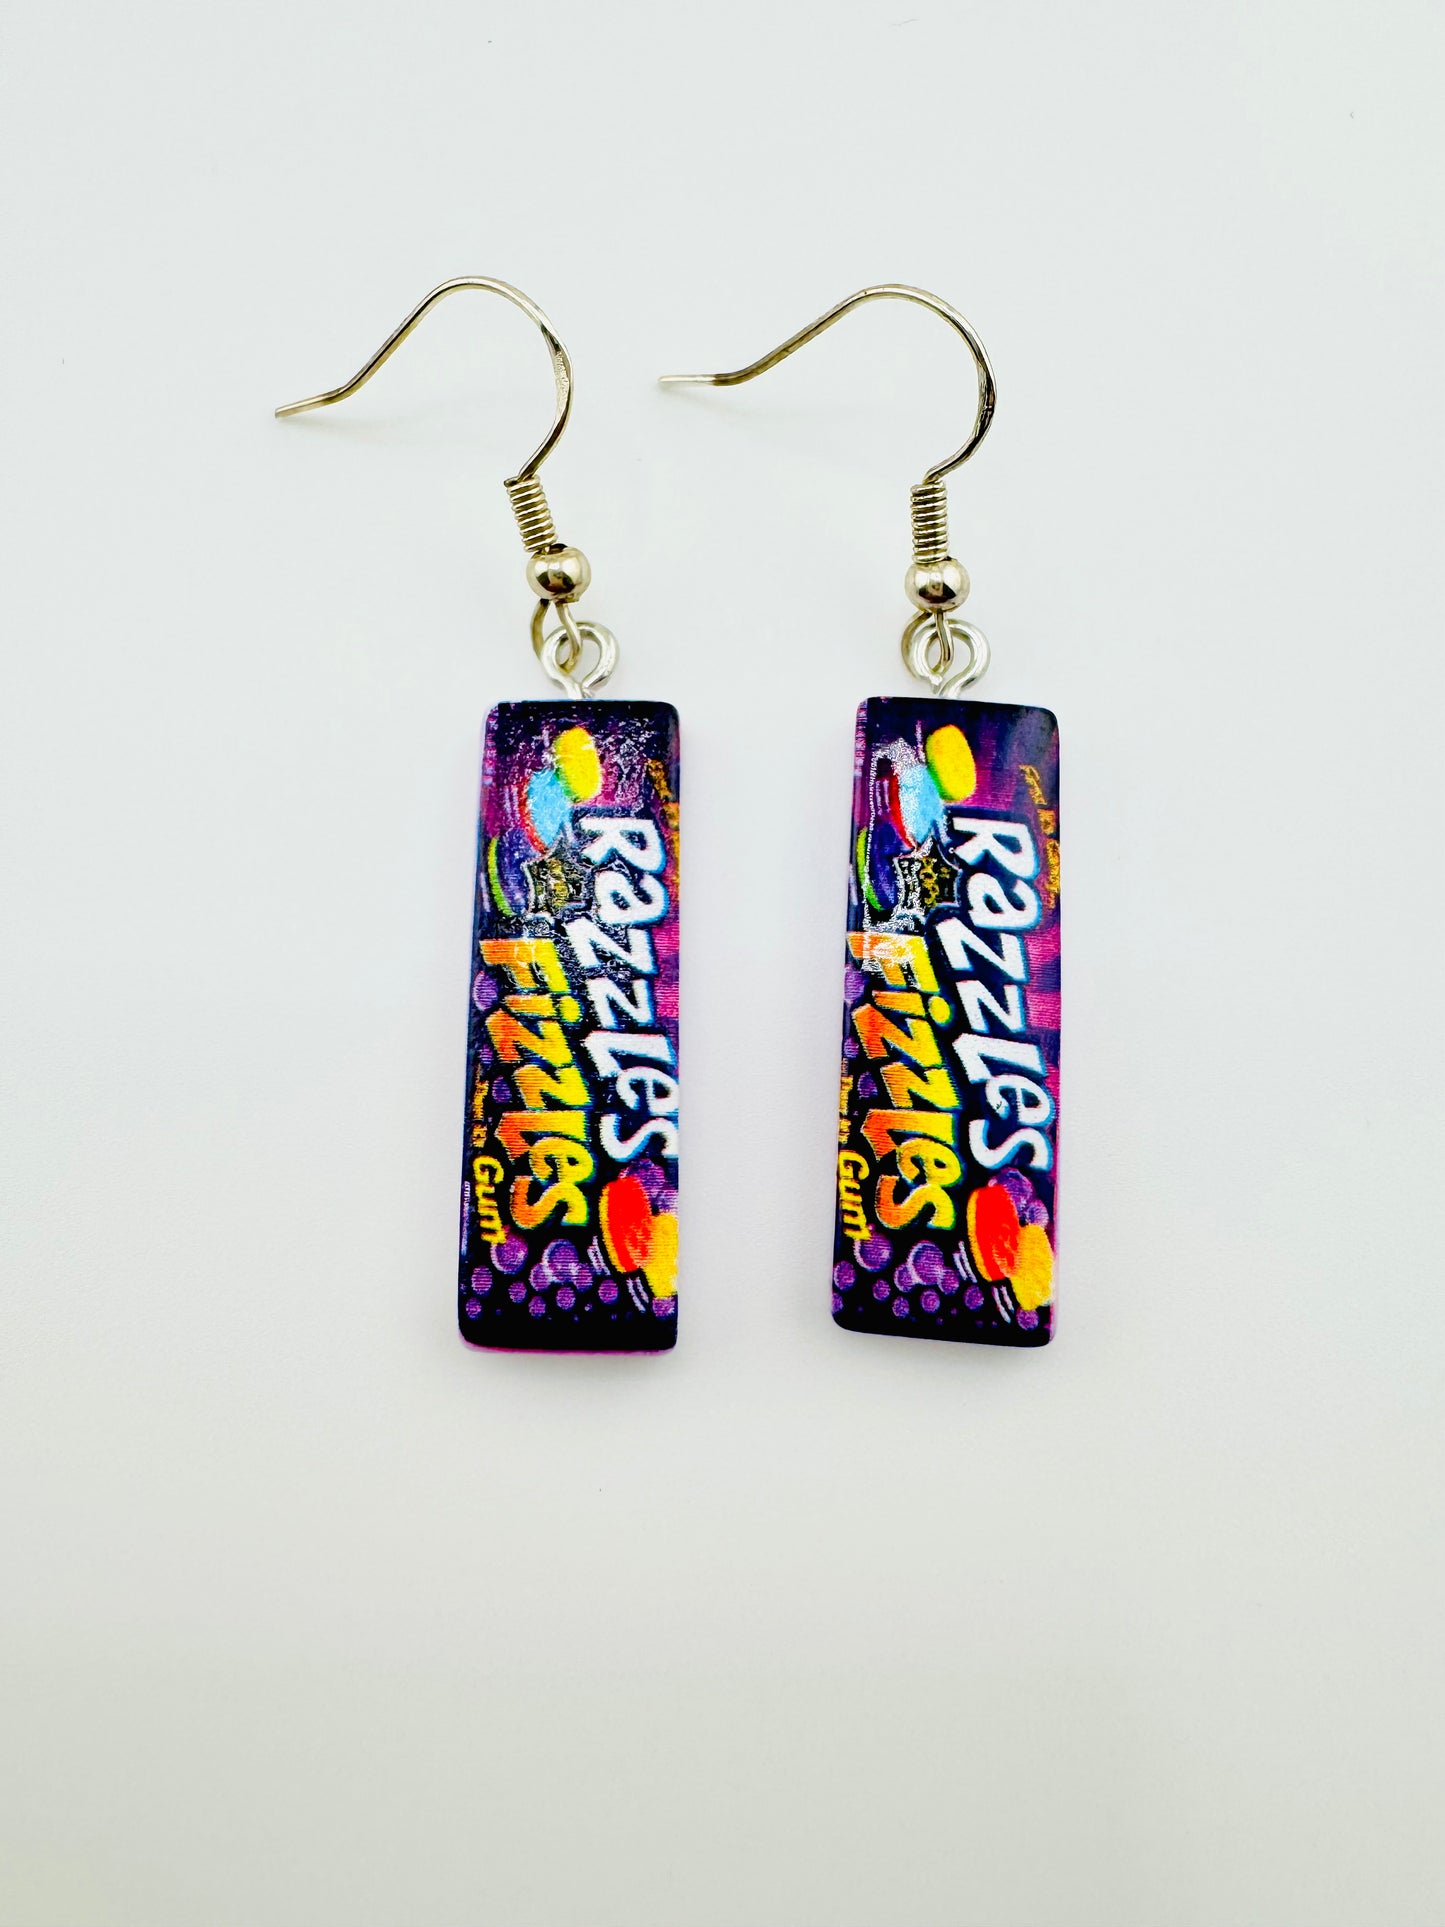 Candy earrings in purple sterling silver